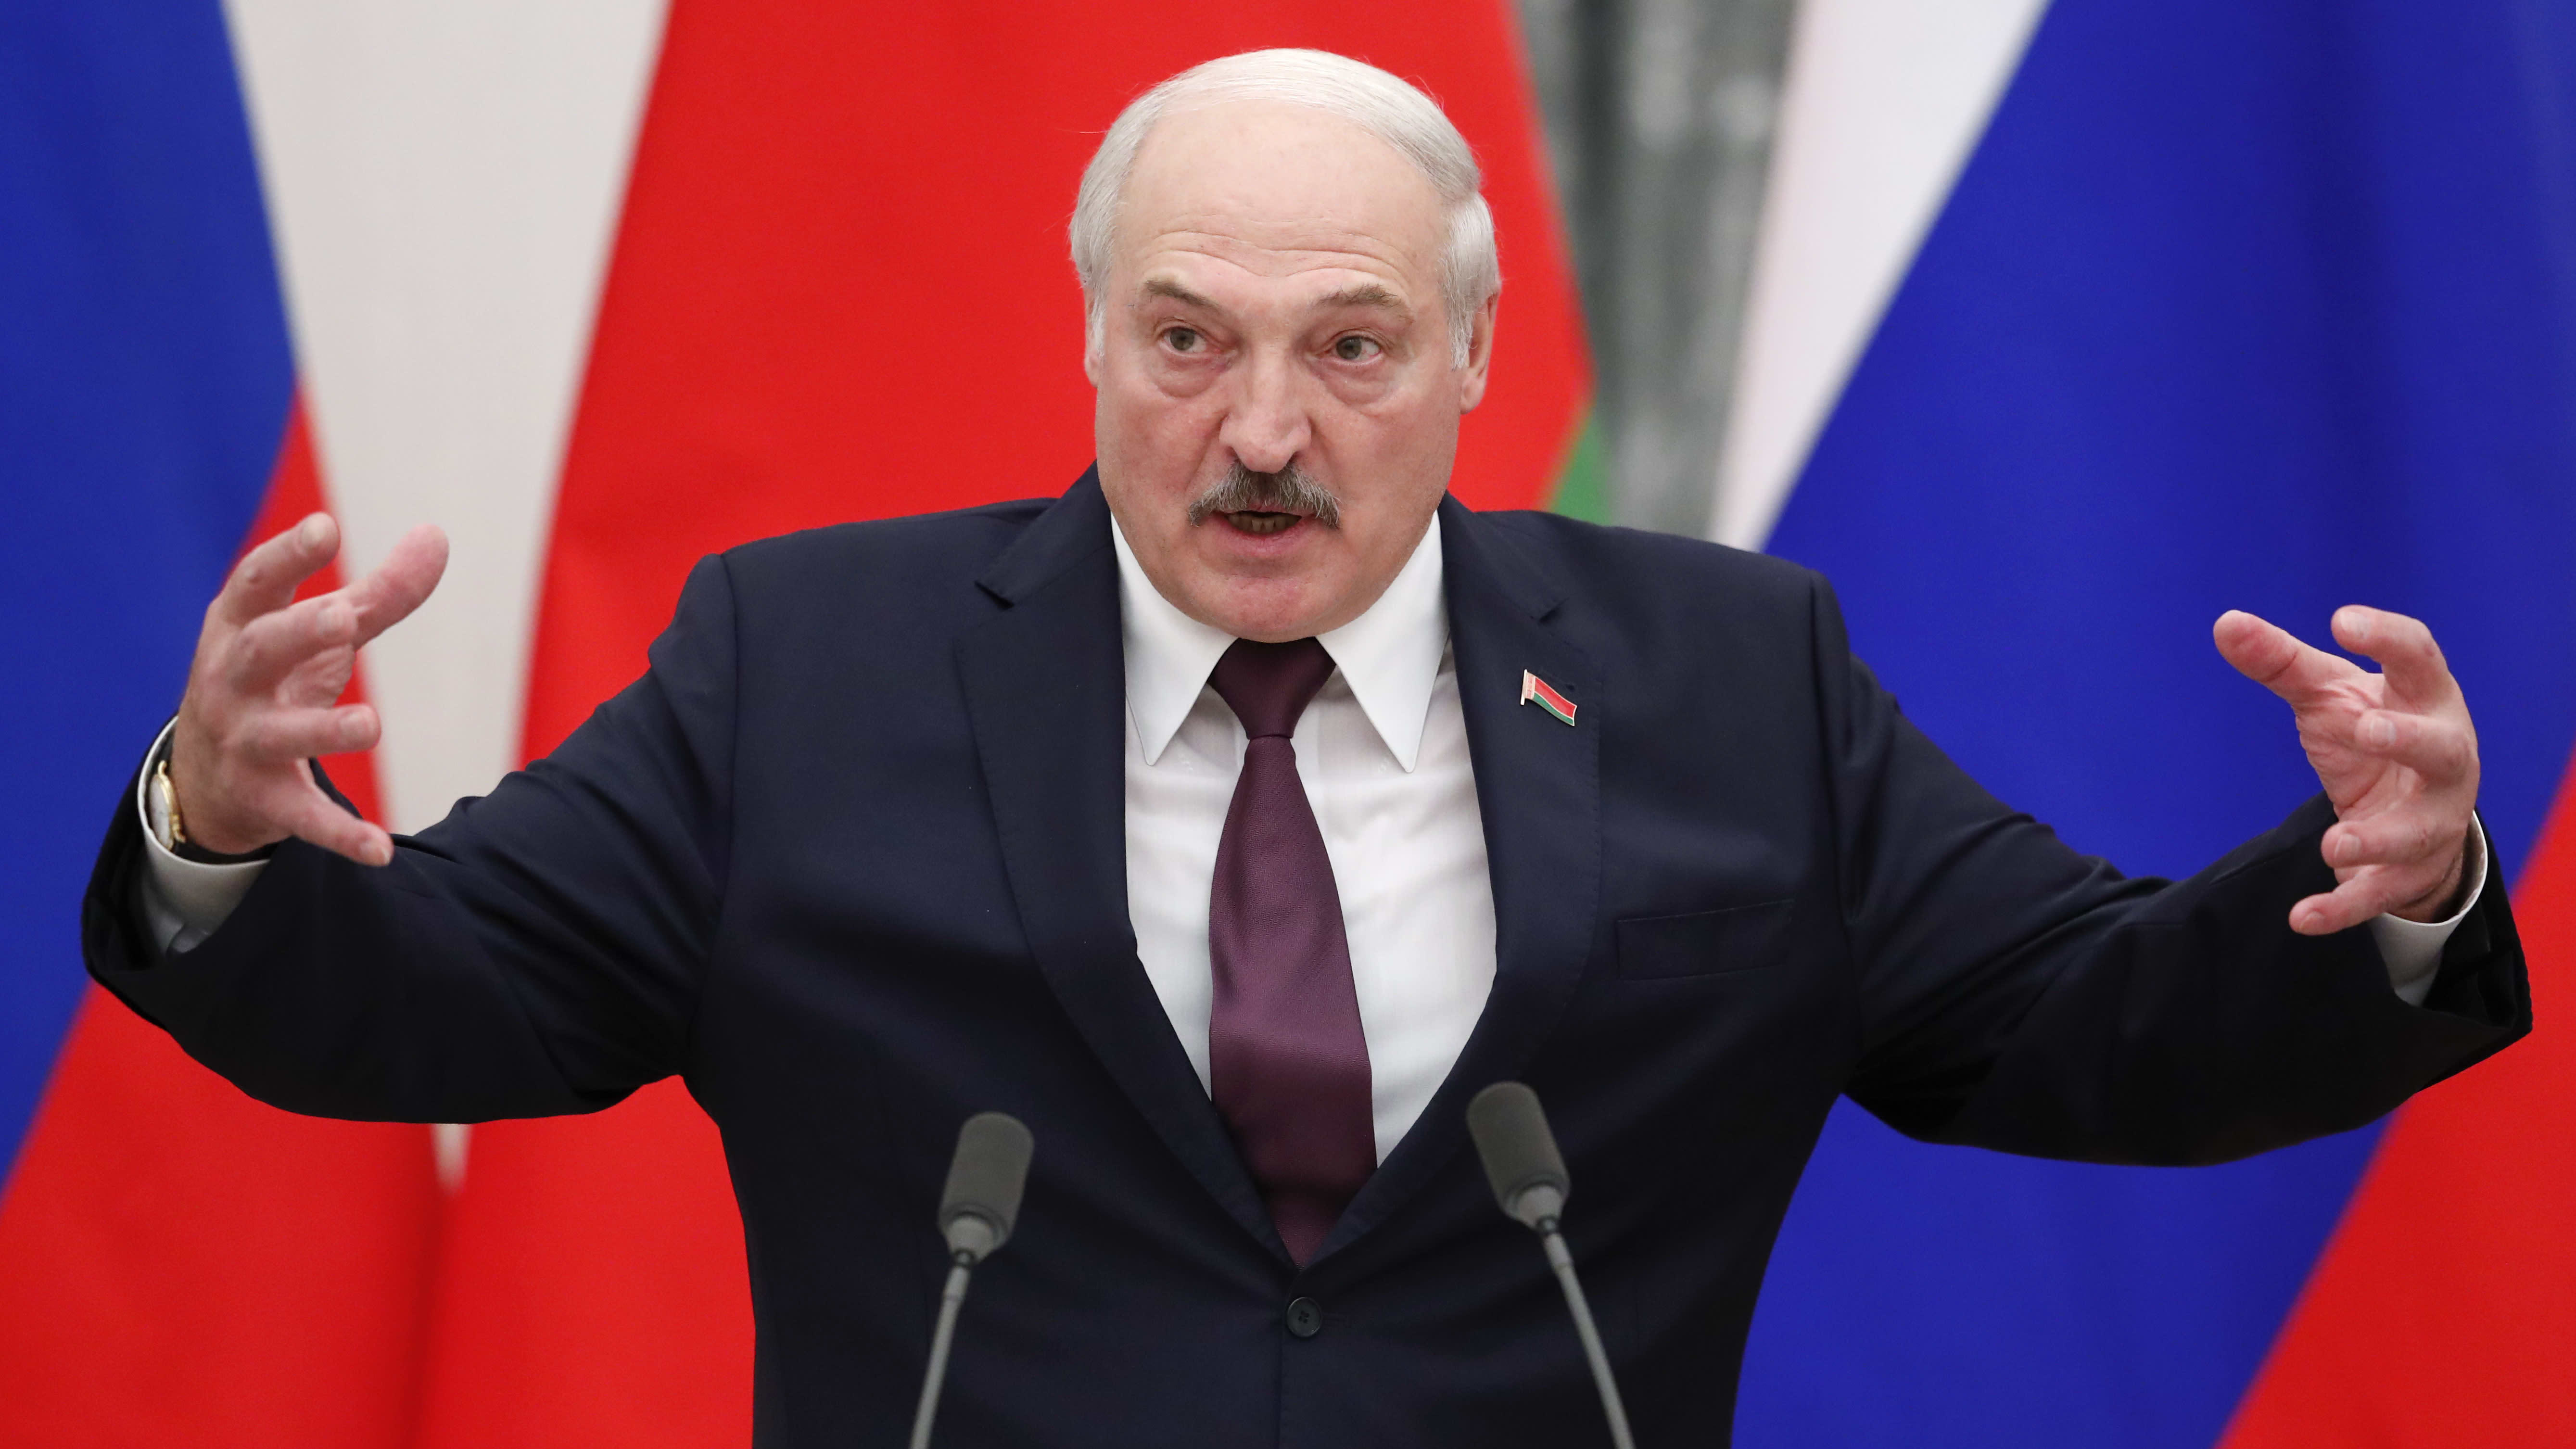 Valko-Venäjän johtaja Aljaksandr Lukašenka uhkailee EU:ta vastatoimilla. Kuva syyskuulta 2021.